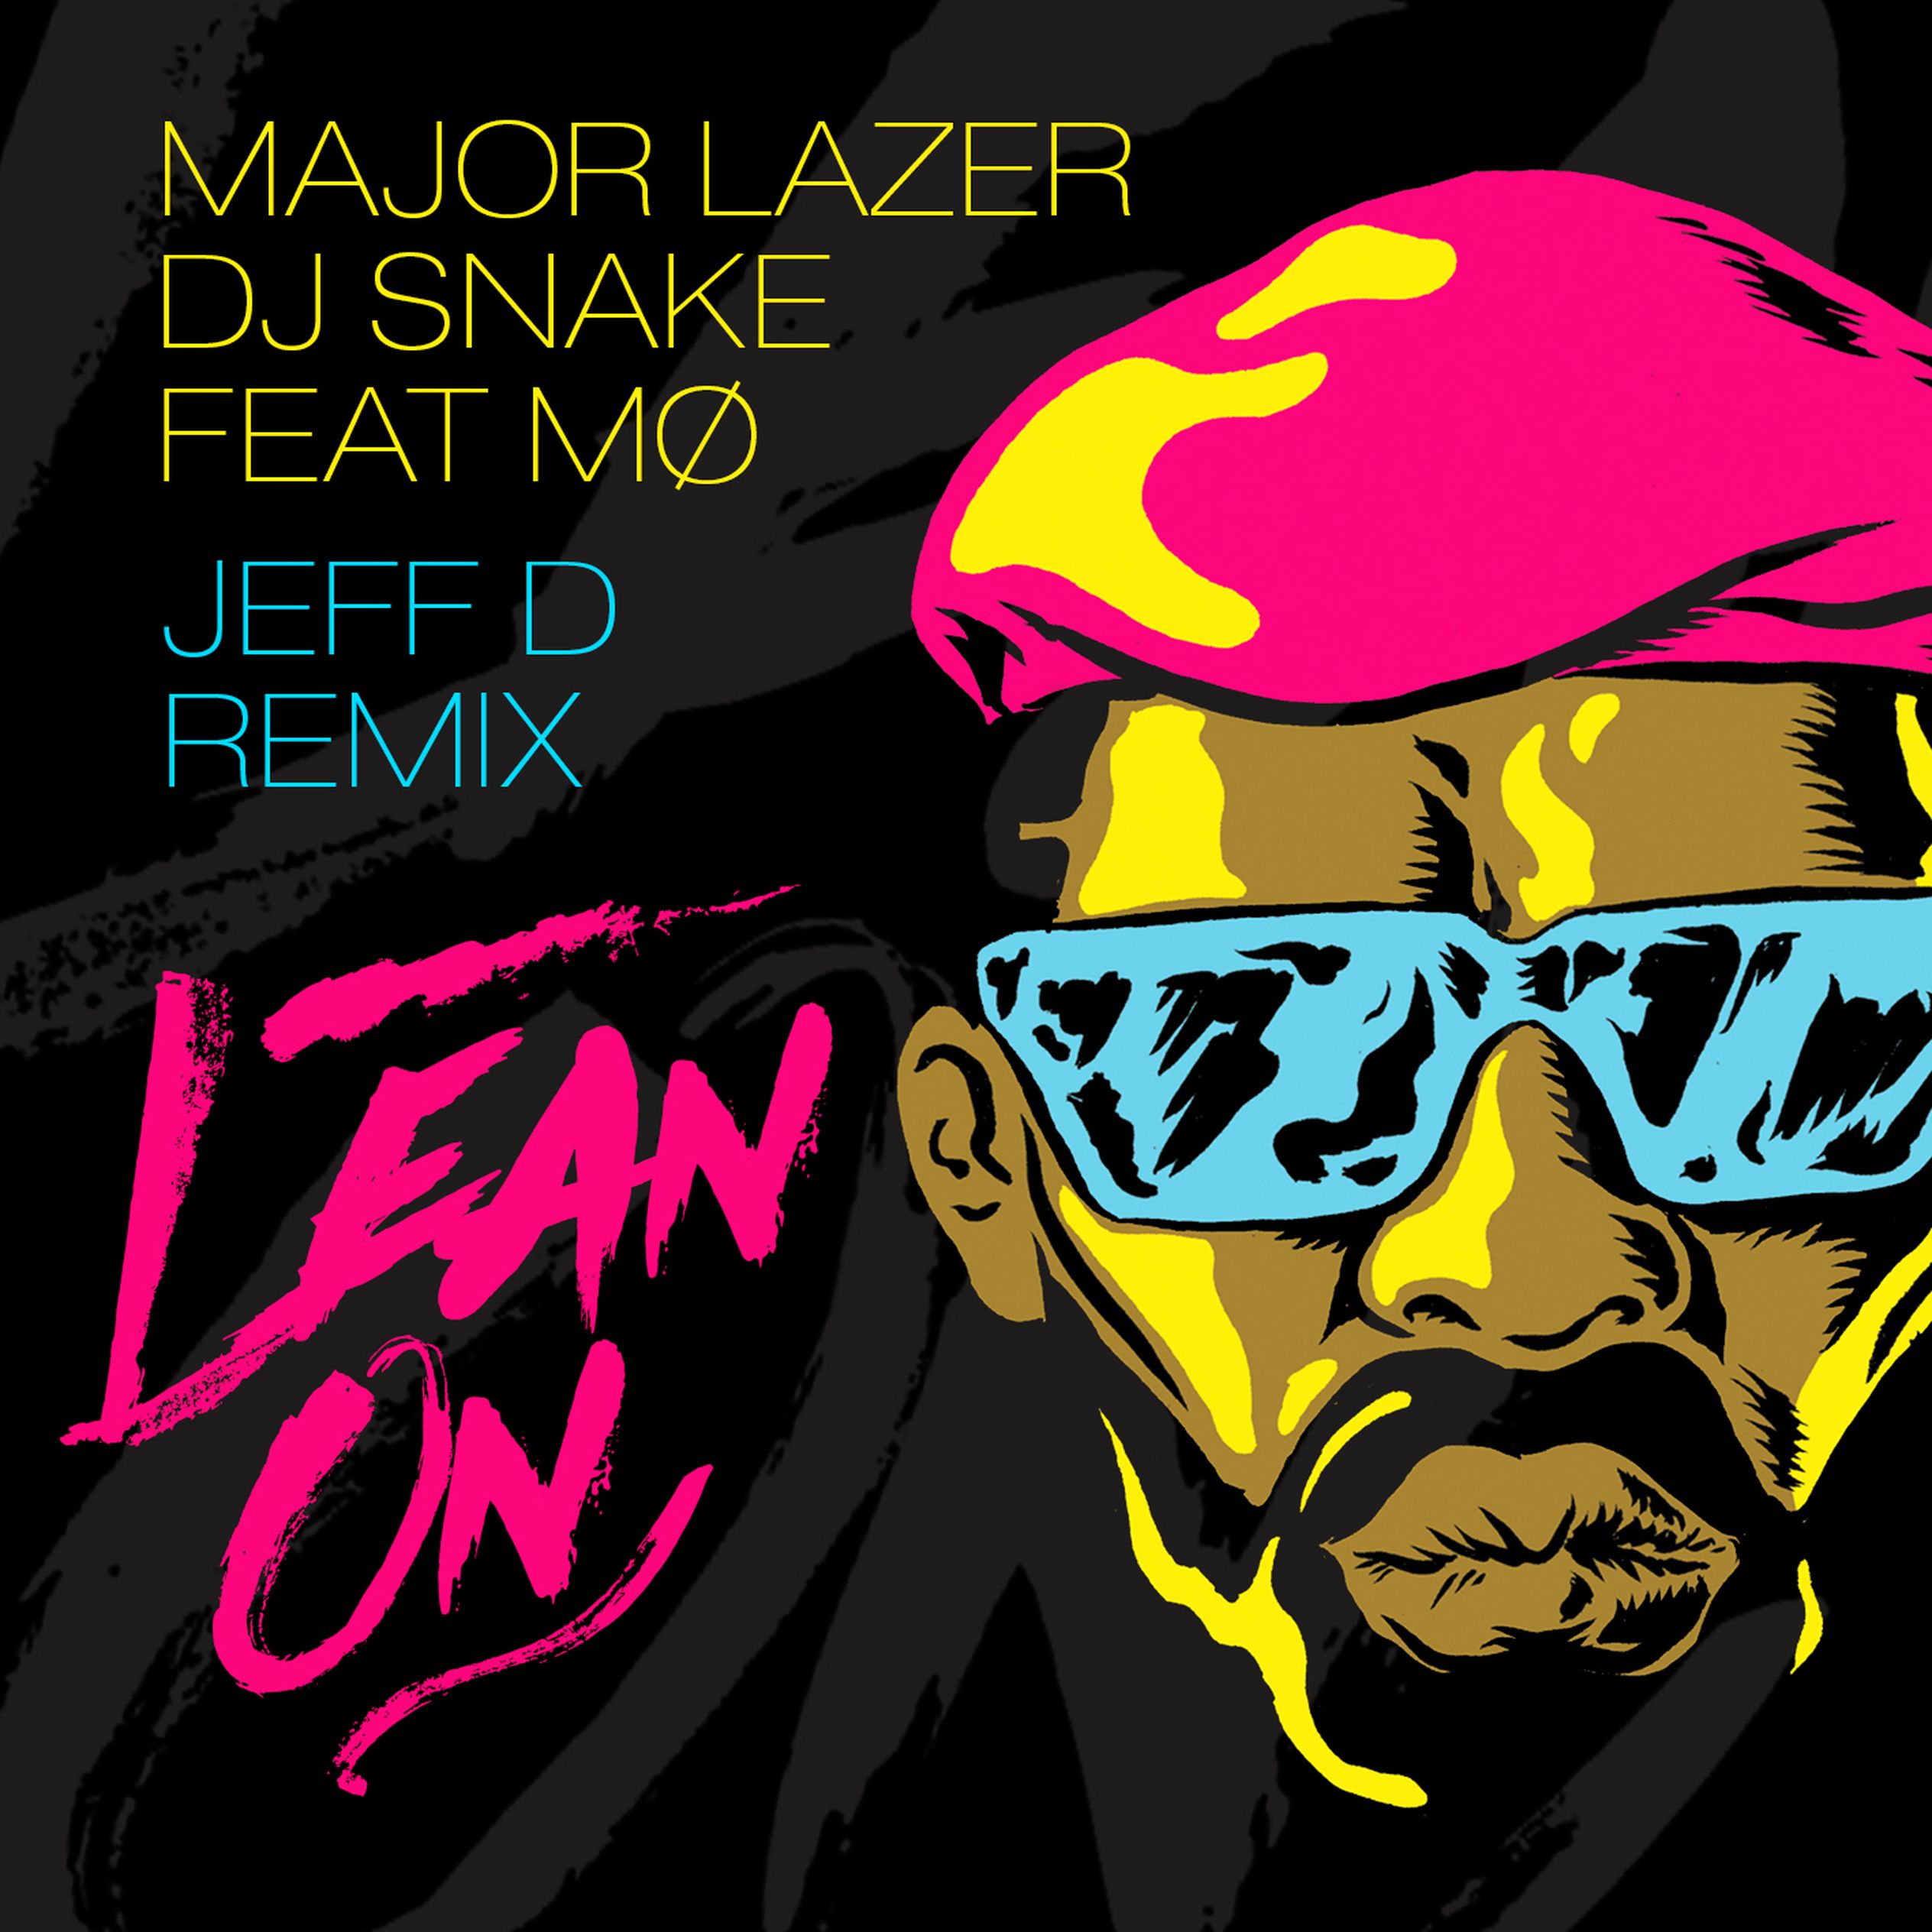 Major lazer remix. Major Lazer. Major Lazer обложки альбомов. Major Lazer DJ. Мажор лейзер эмблемы.